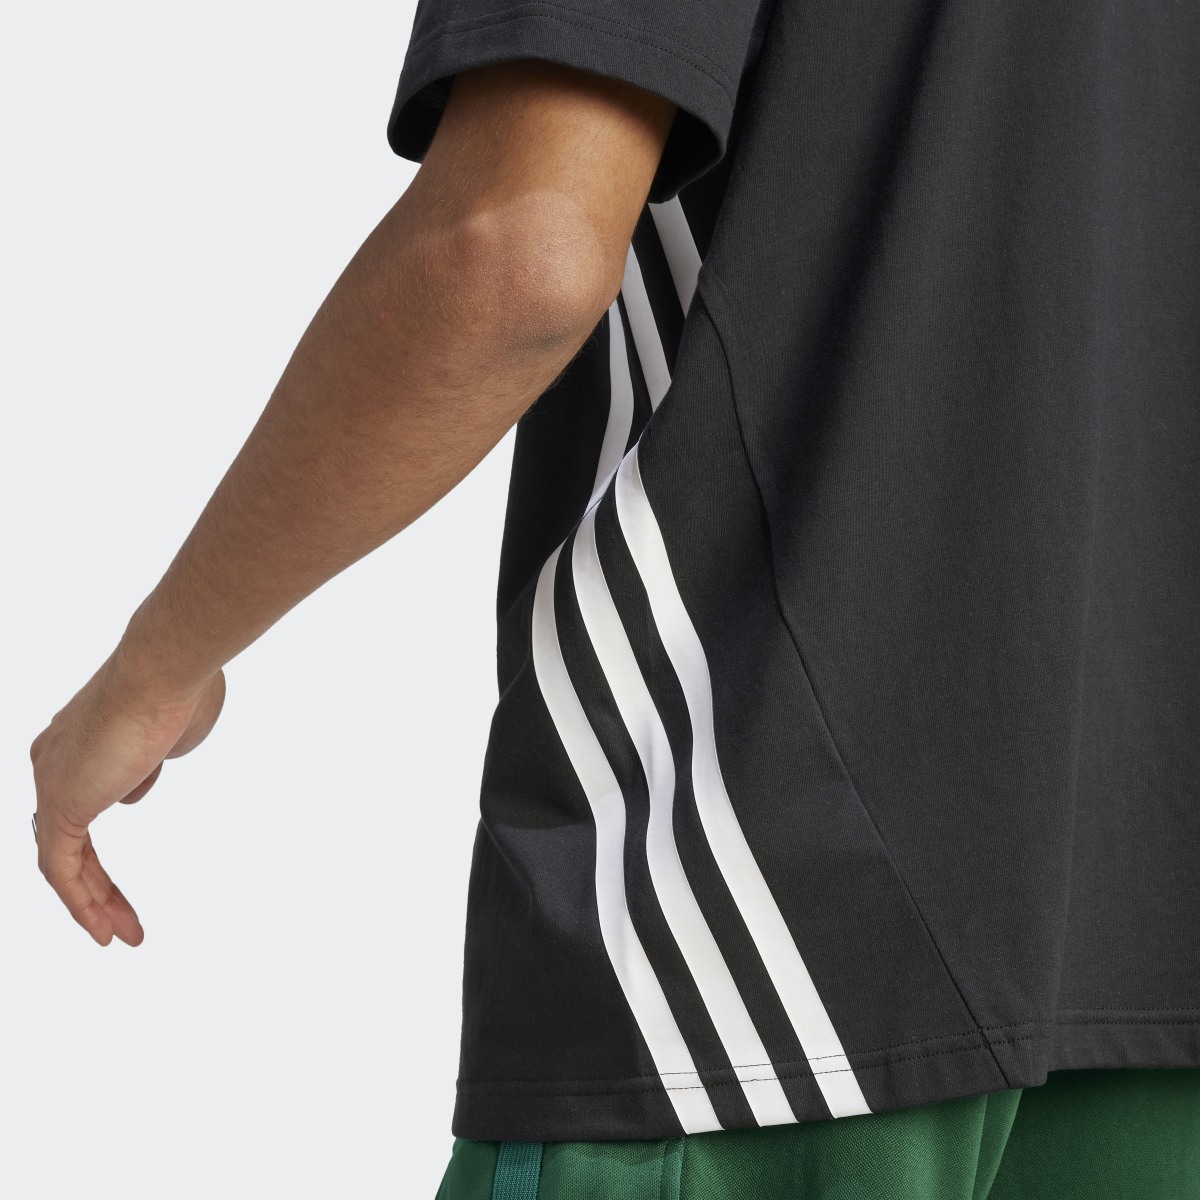 Adidas Future Icons 3-Stripes T-Shirt. 7